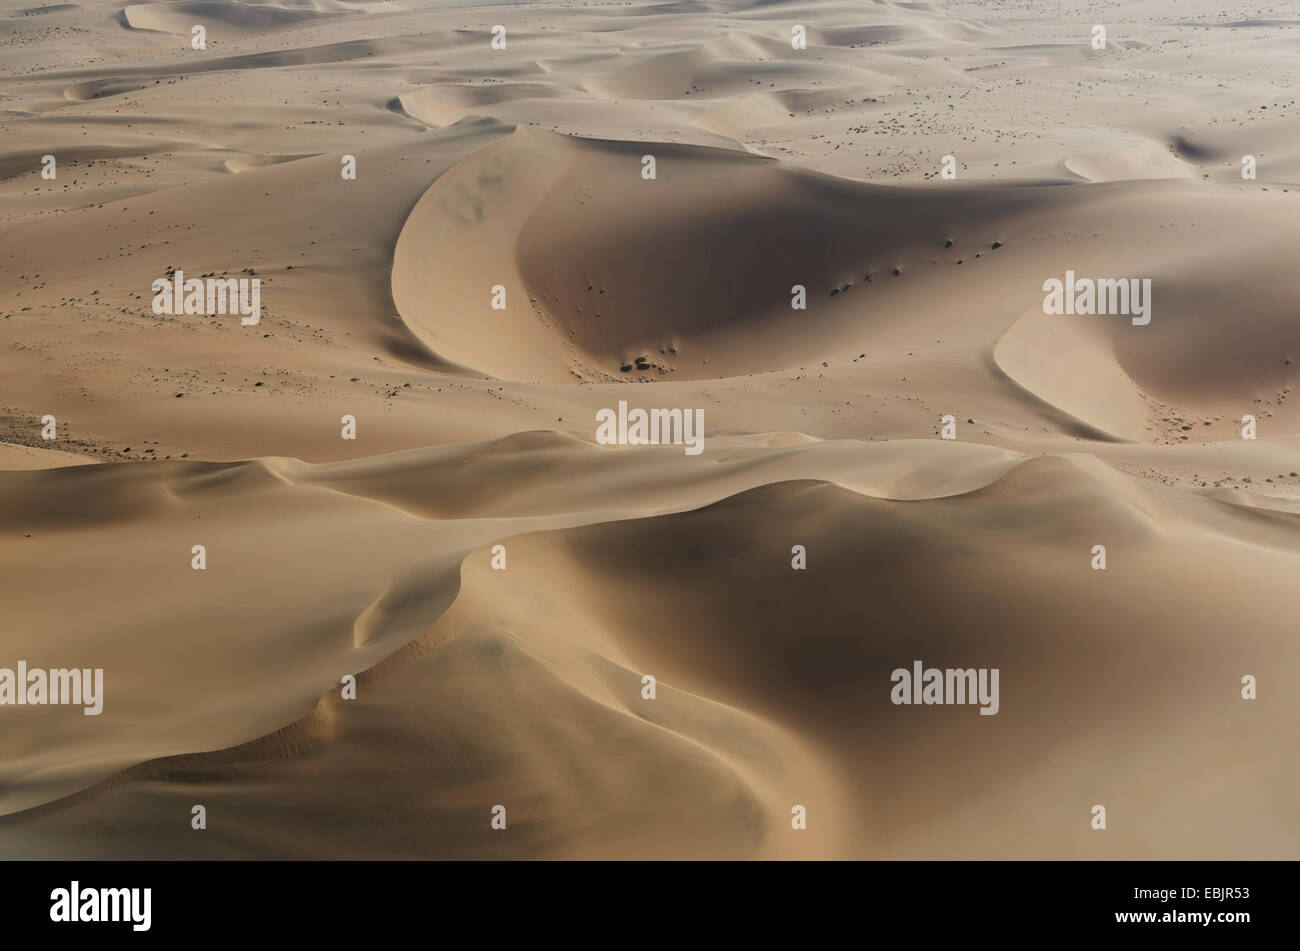 Vue aérienne de dunes, le désert de Namib, Namibie Banque D'Images